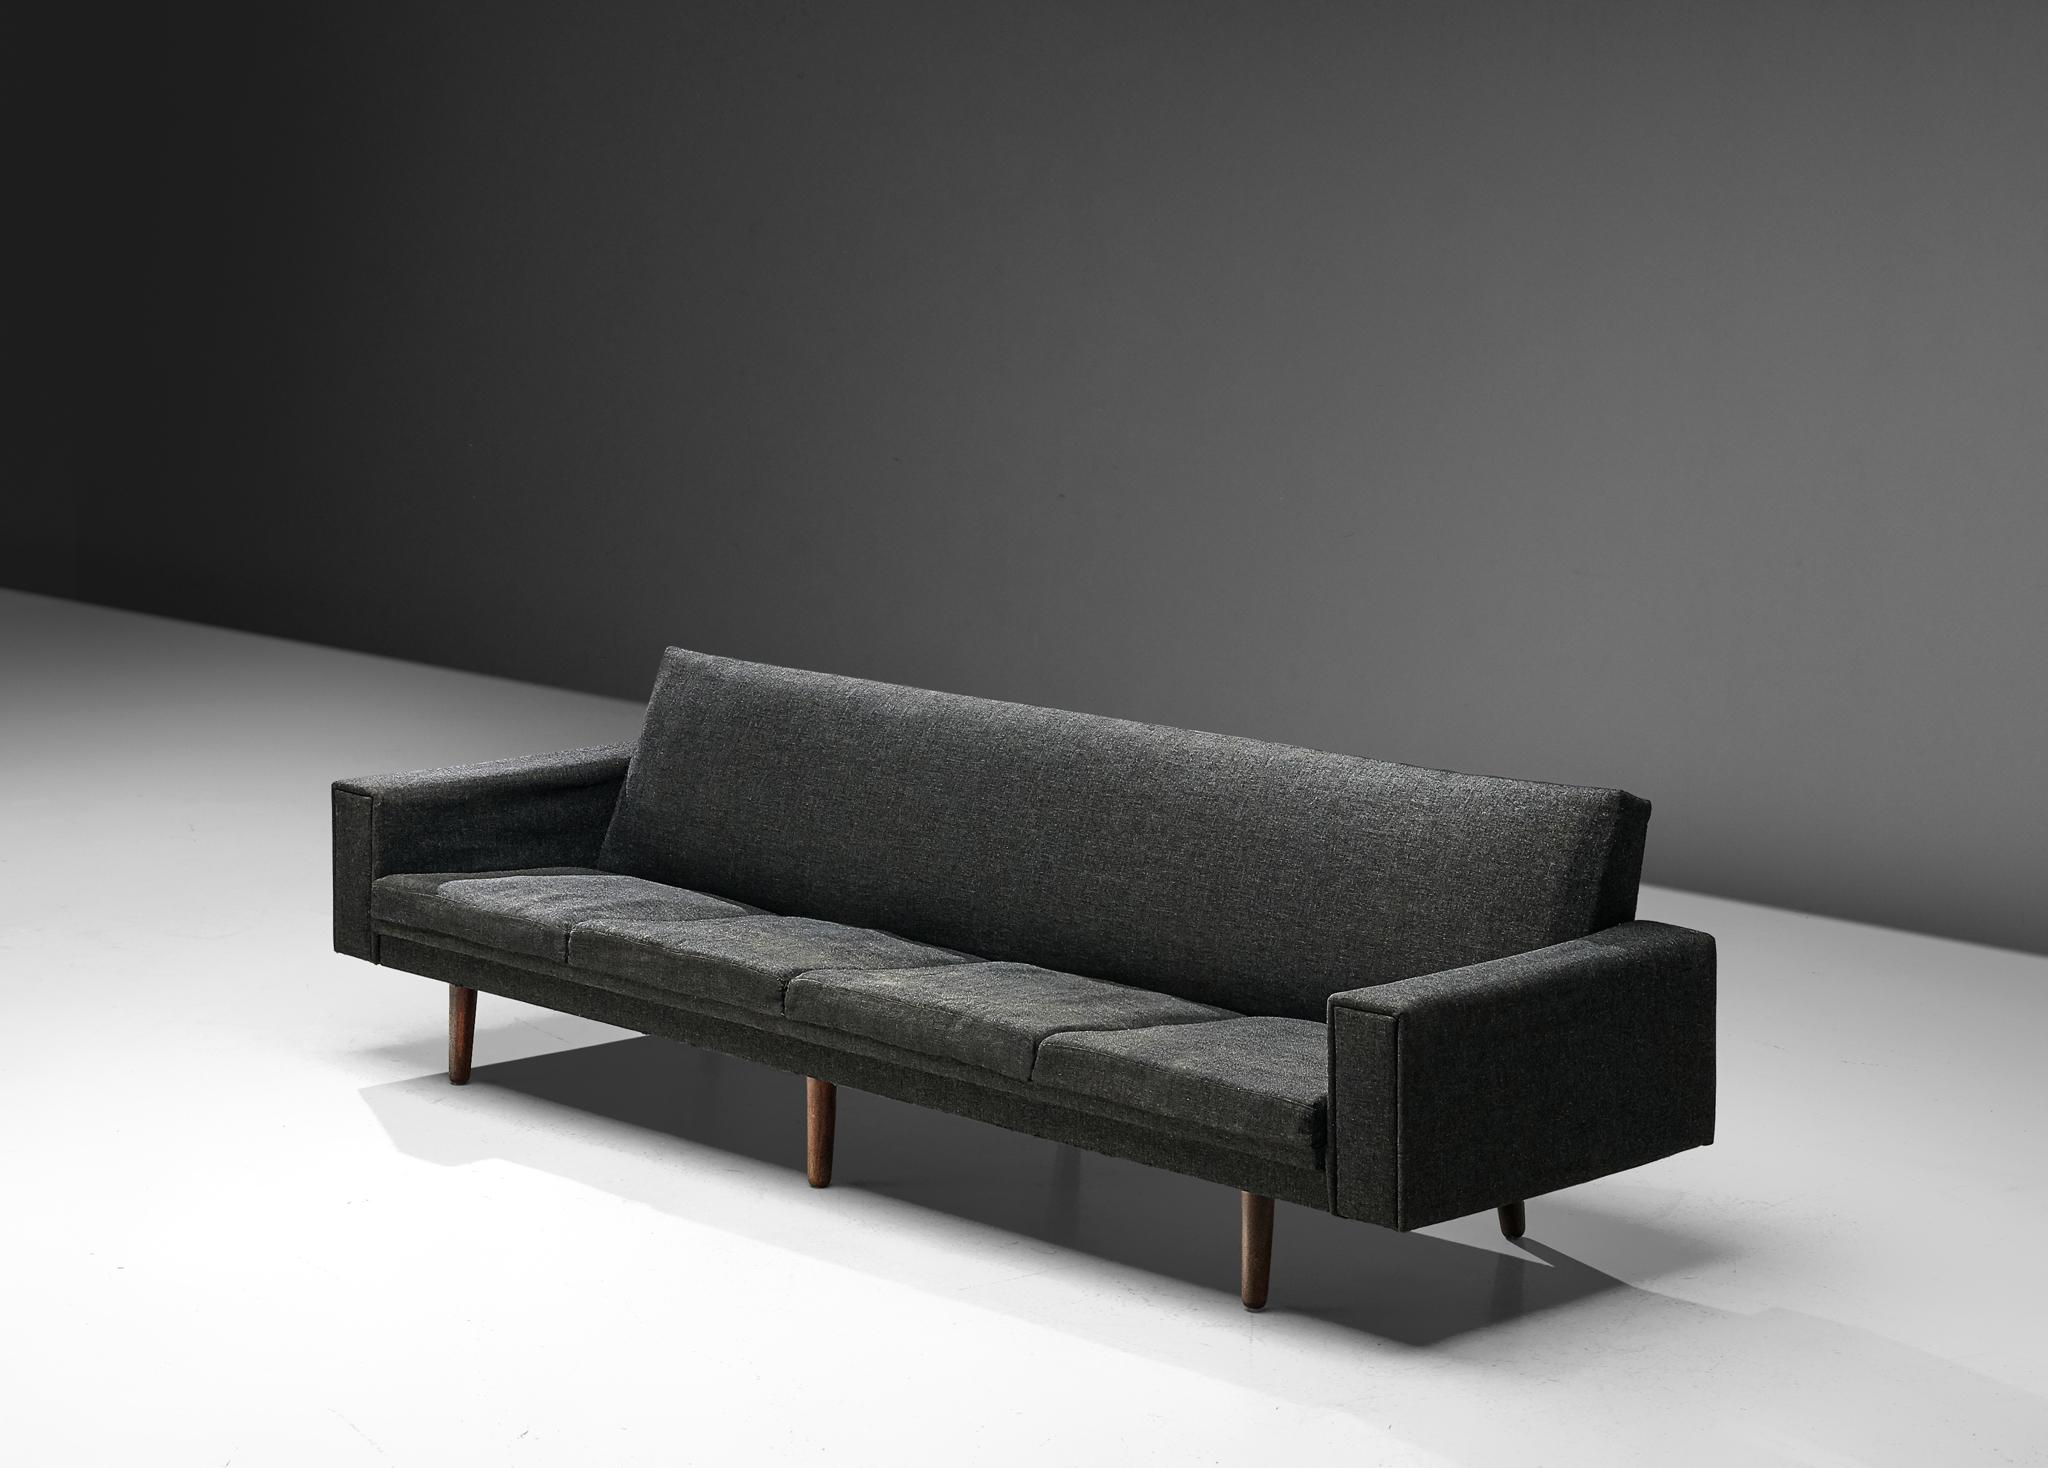 Sofa, Stoff, Holz, Dänemark, 1960er Jahre

Dieses gut ausgeführte Sofa überzeugt optisch durch das ausgewogene Erscheinungsbild und die stabile Konstruktion. Der Korpus basiert auf einer zurückhaltenden Einfachheit, bei der klare, scharfe Linien im